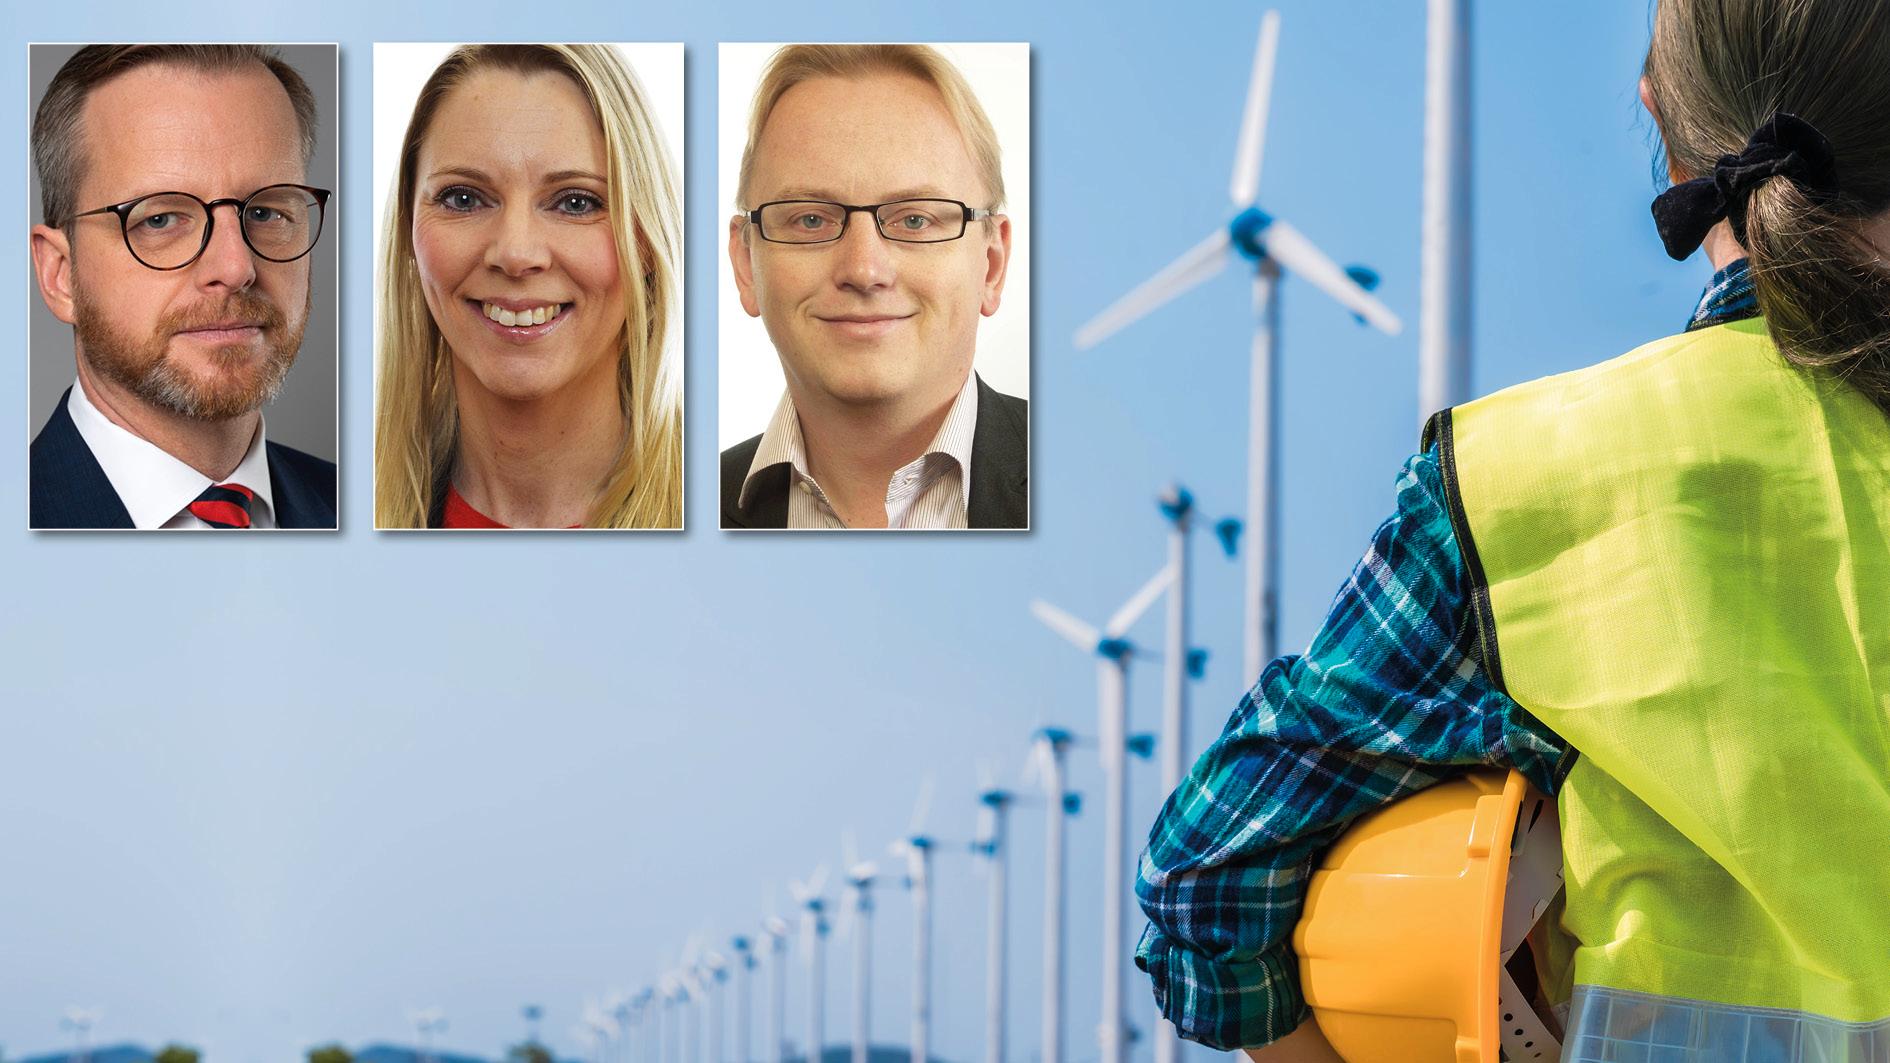 Tillgången på rätt kompetens är avgörande för att klara klimat- och energiomställningen – och för att säkra jobben. Då krävs investeringar i utbildning i stället för regeringens nedskärningar, skriver Mikael Damberg, Åsa Westlund och Fredrik Olovsson.